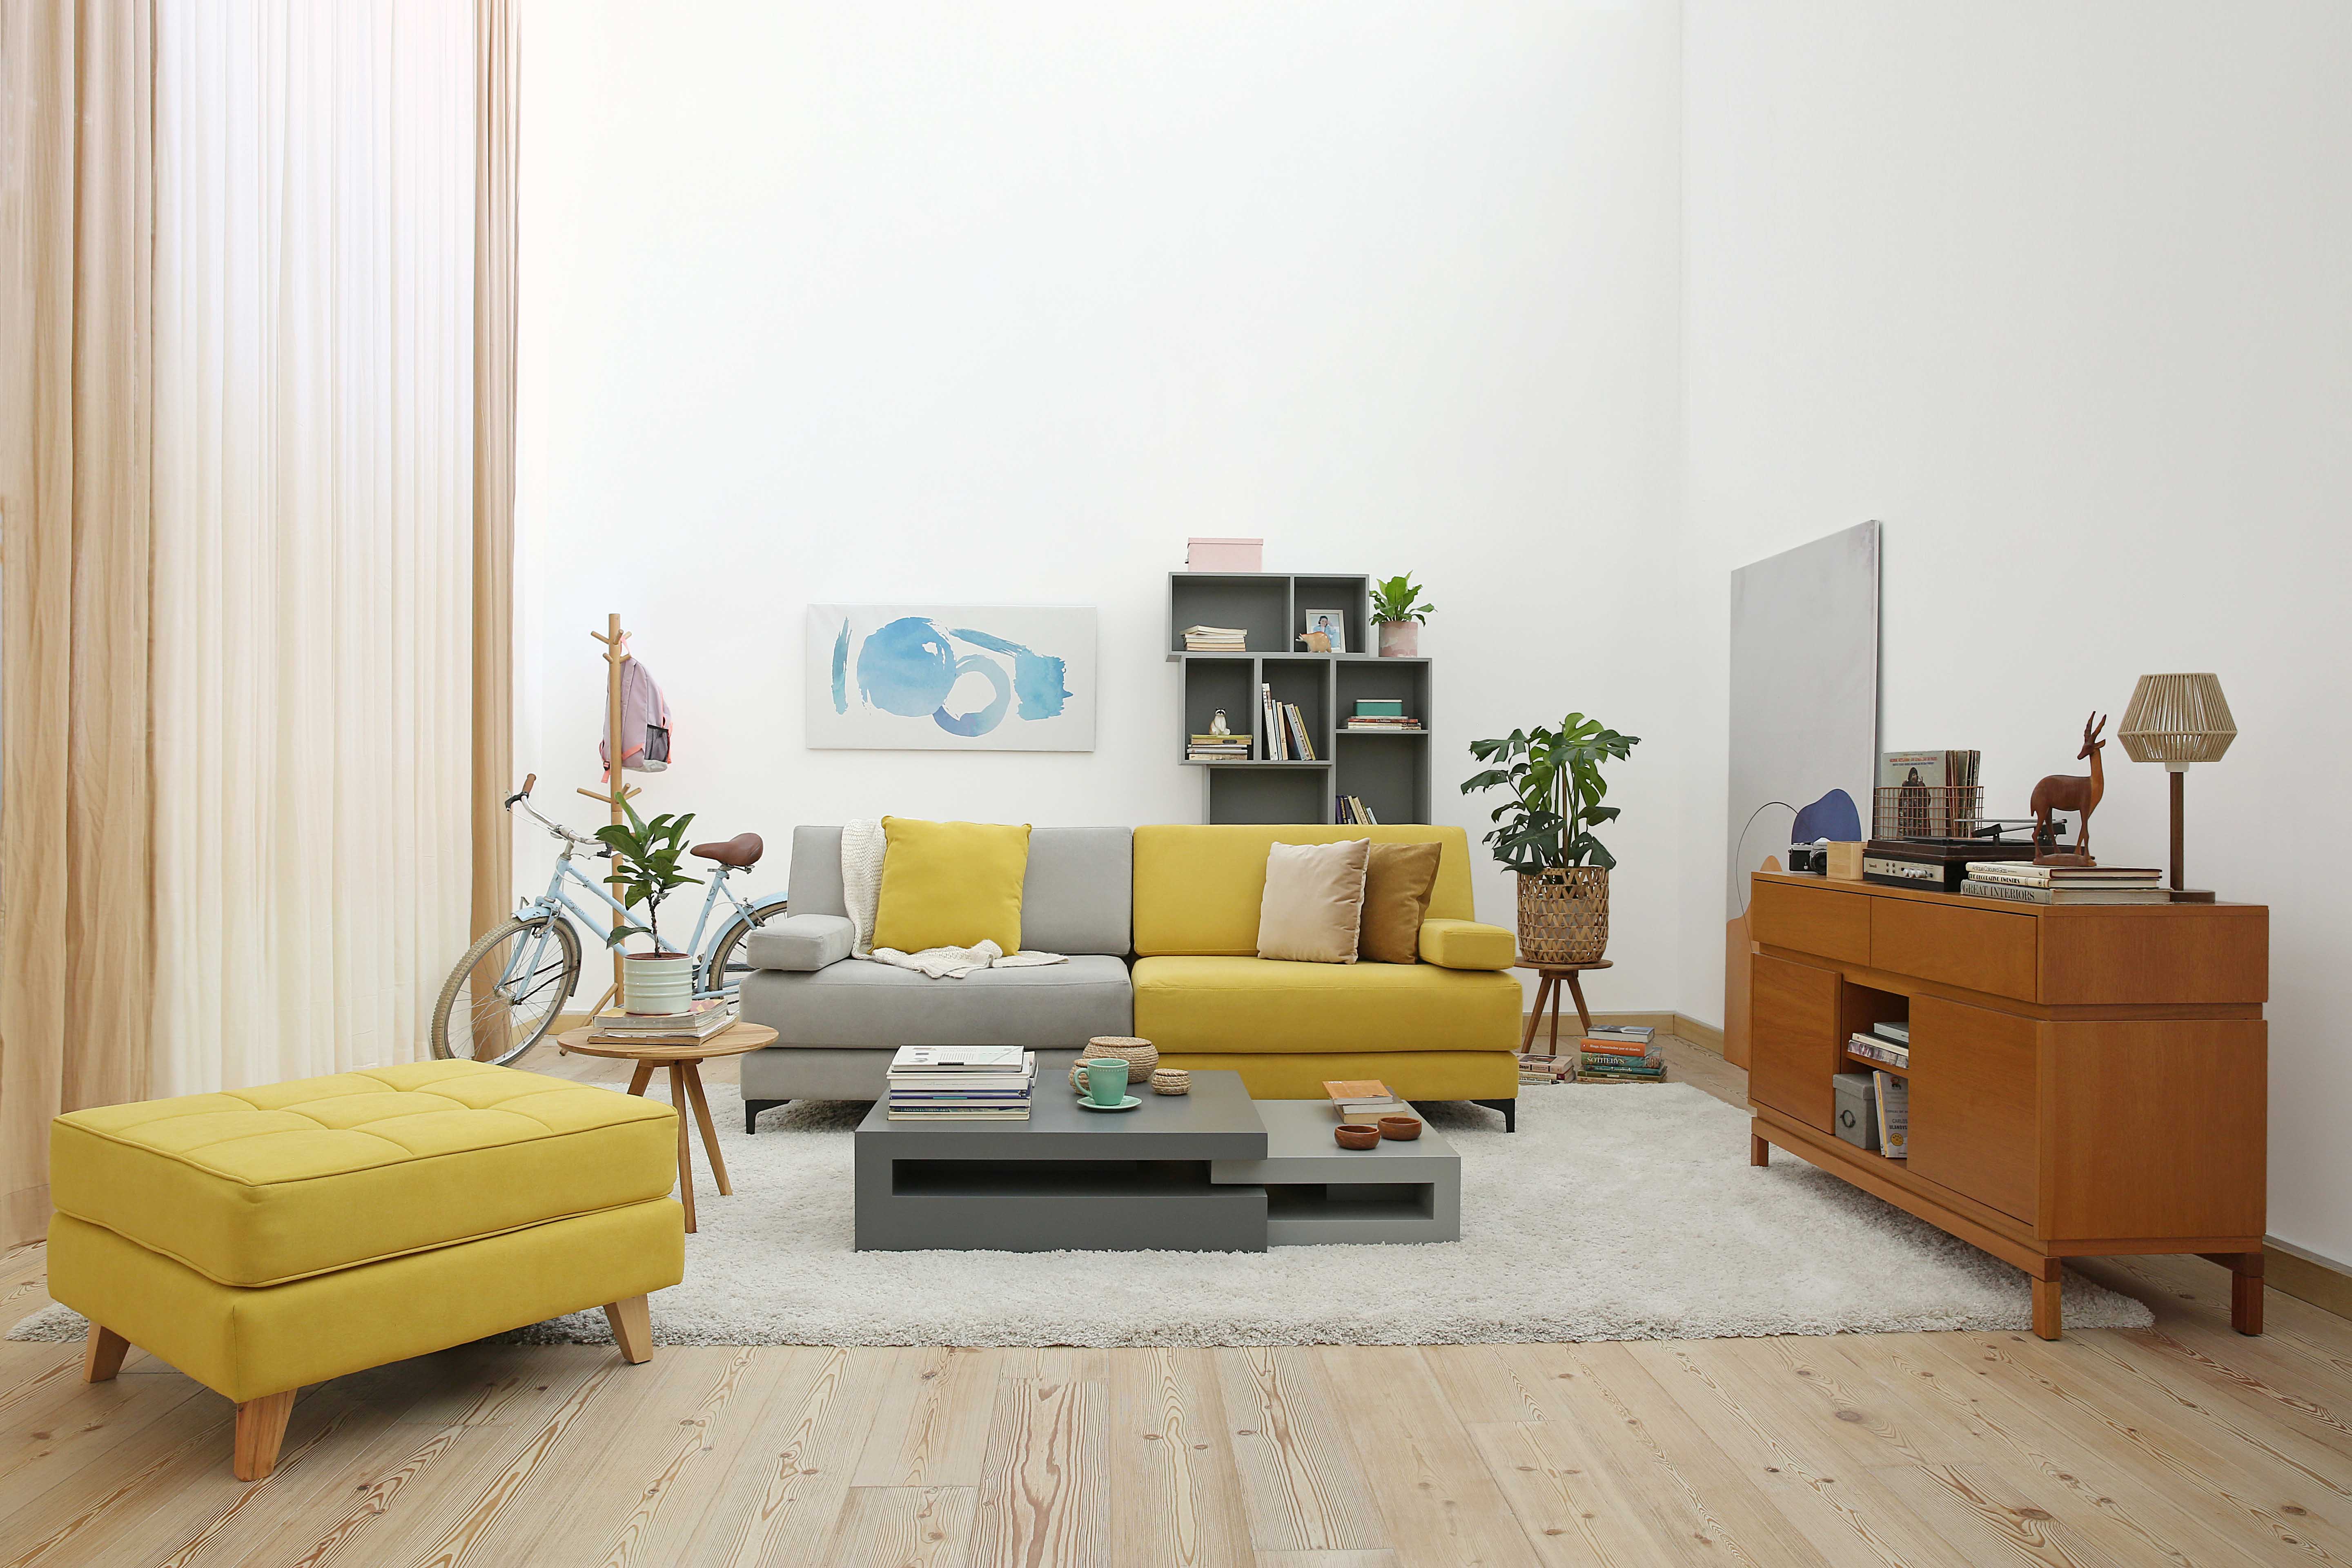 El sofá bicolor puede dividirse al igual que la biblioteca o repisa que está detrás en este living, una tendencia de los tiempos actuales